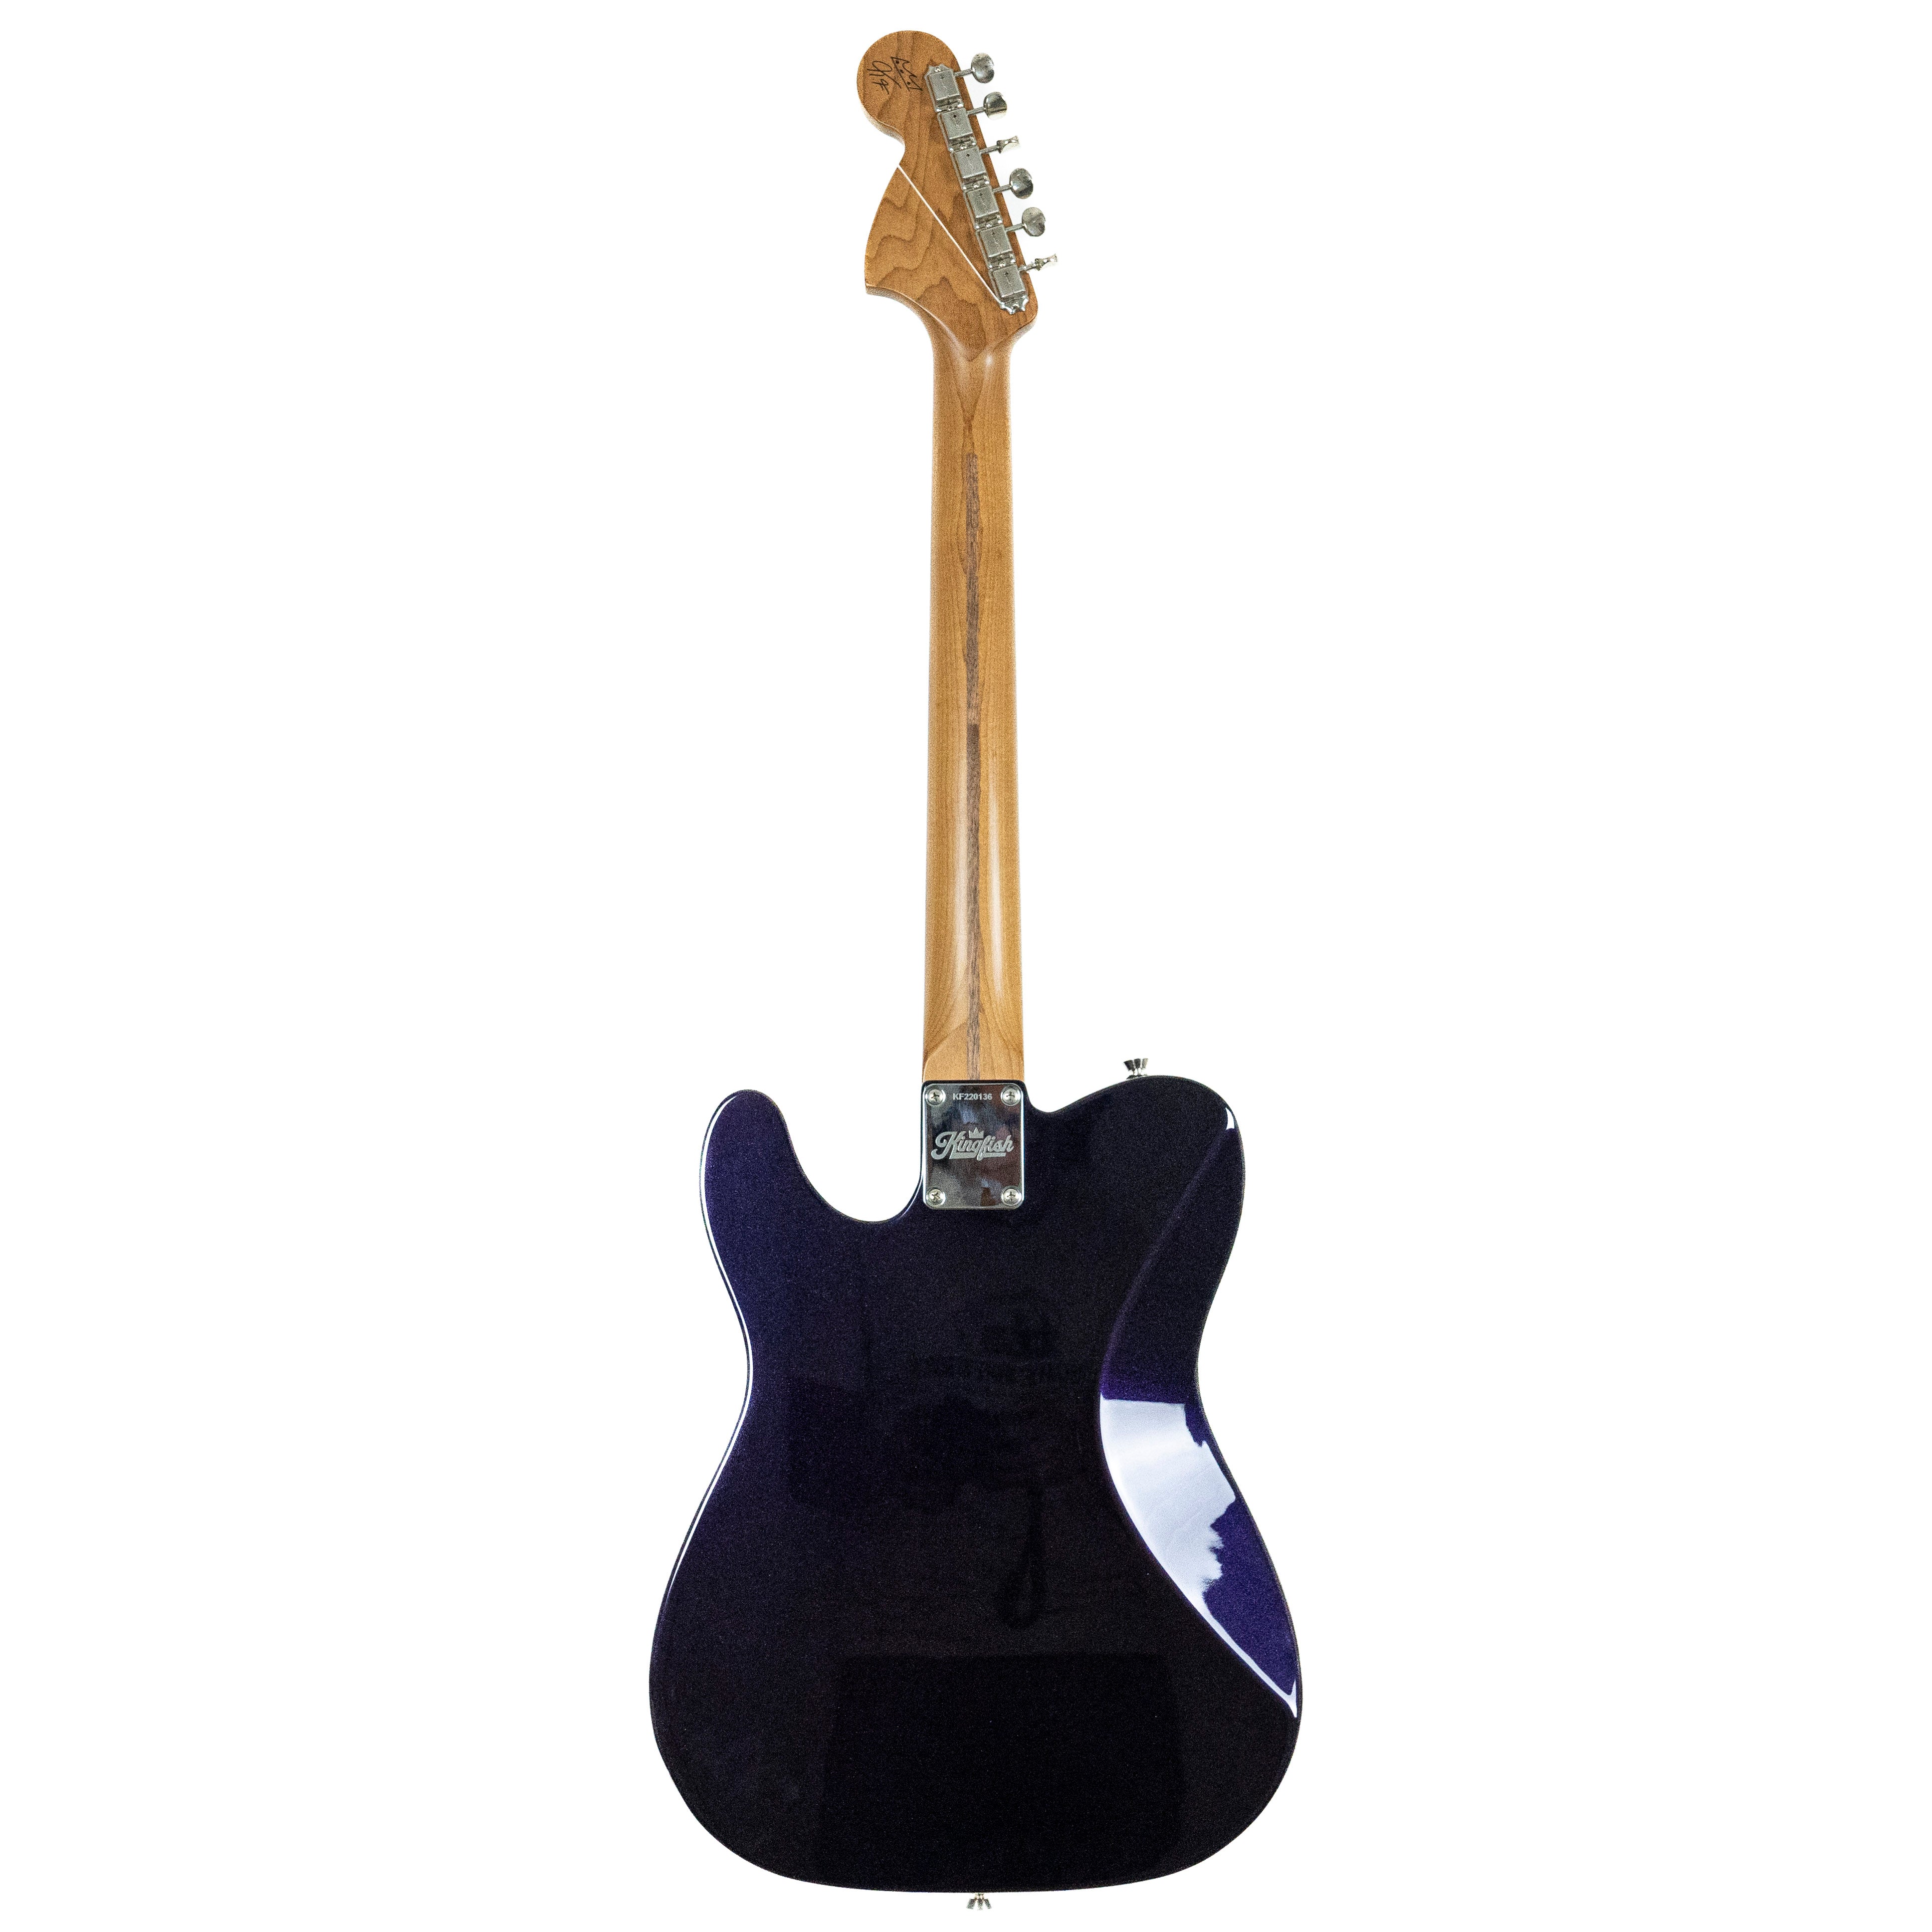 Fender 2022 Kingfish Signature Tele Deluxe